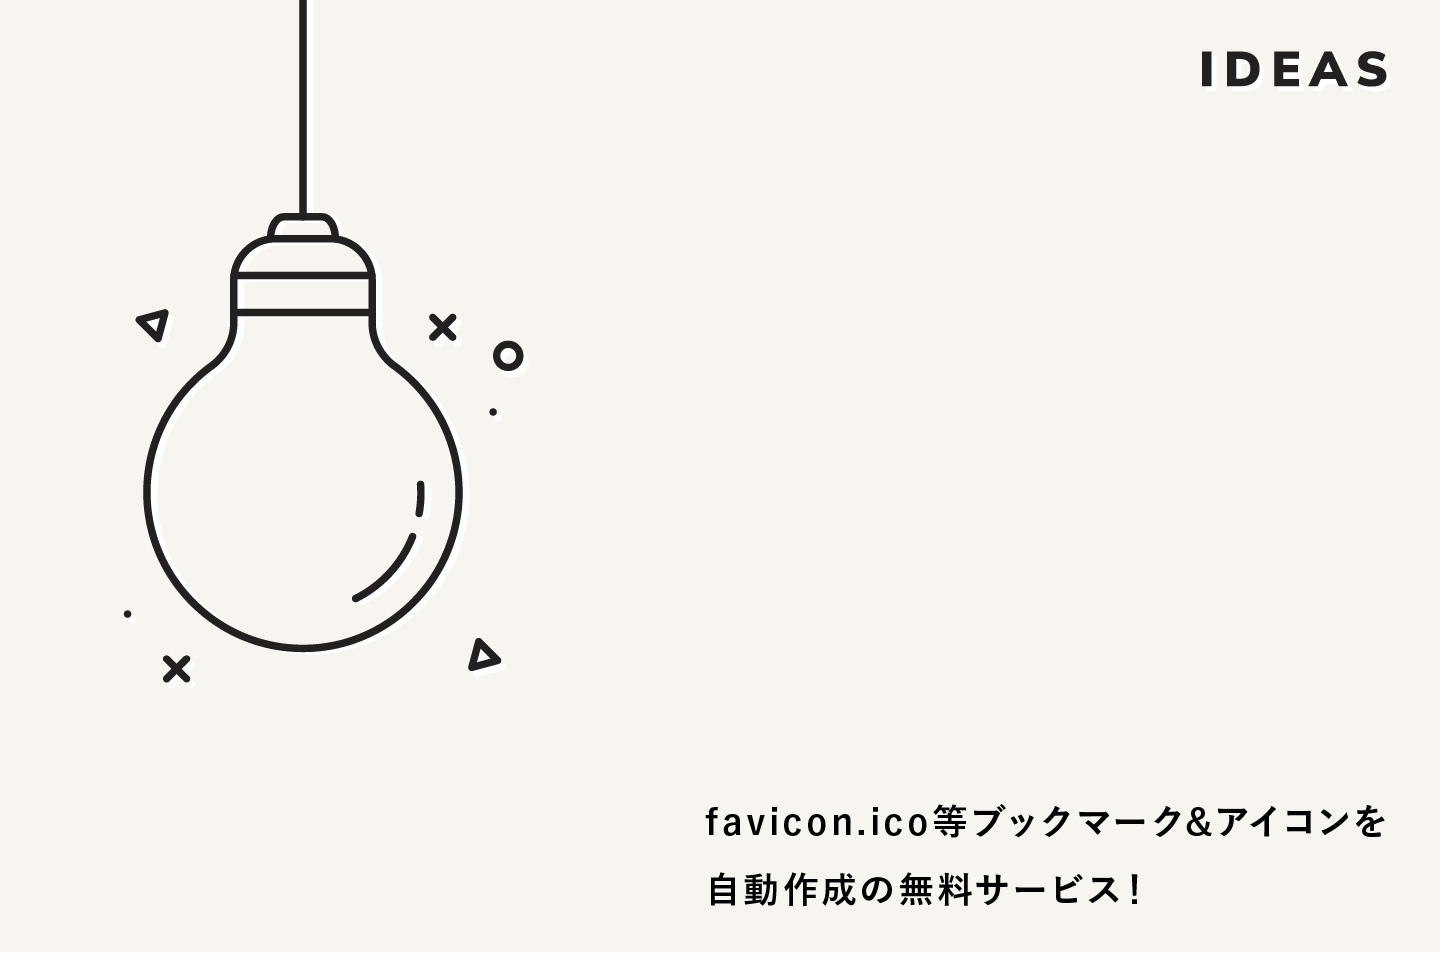 2020年版 Favicon Ico ブックマーク アイコンを自動作成の無料サービス Good Web Design